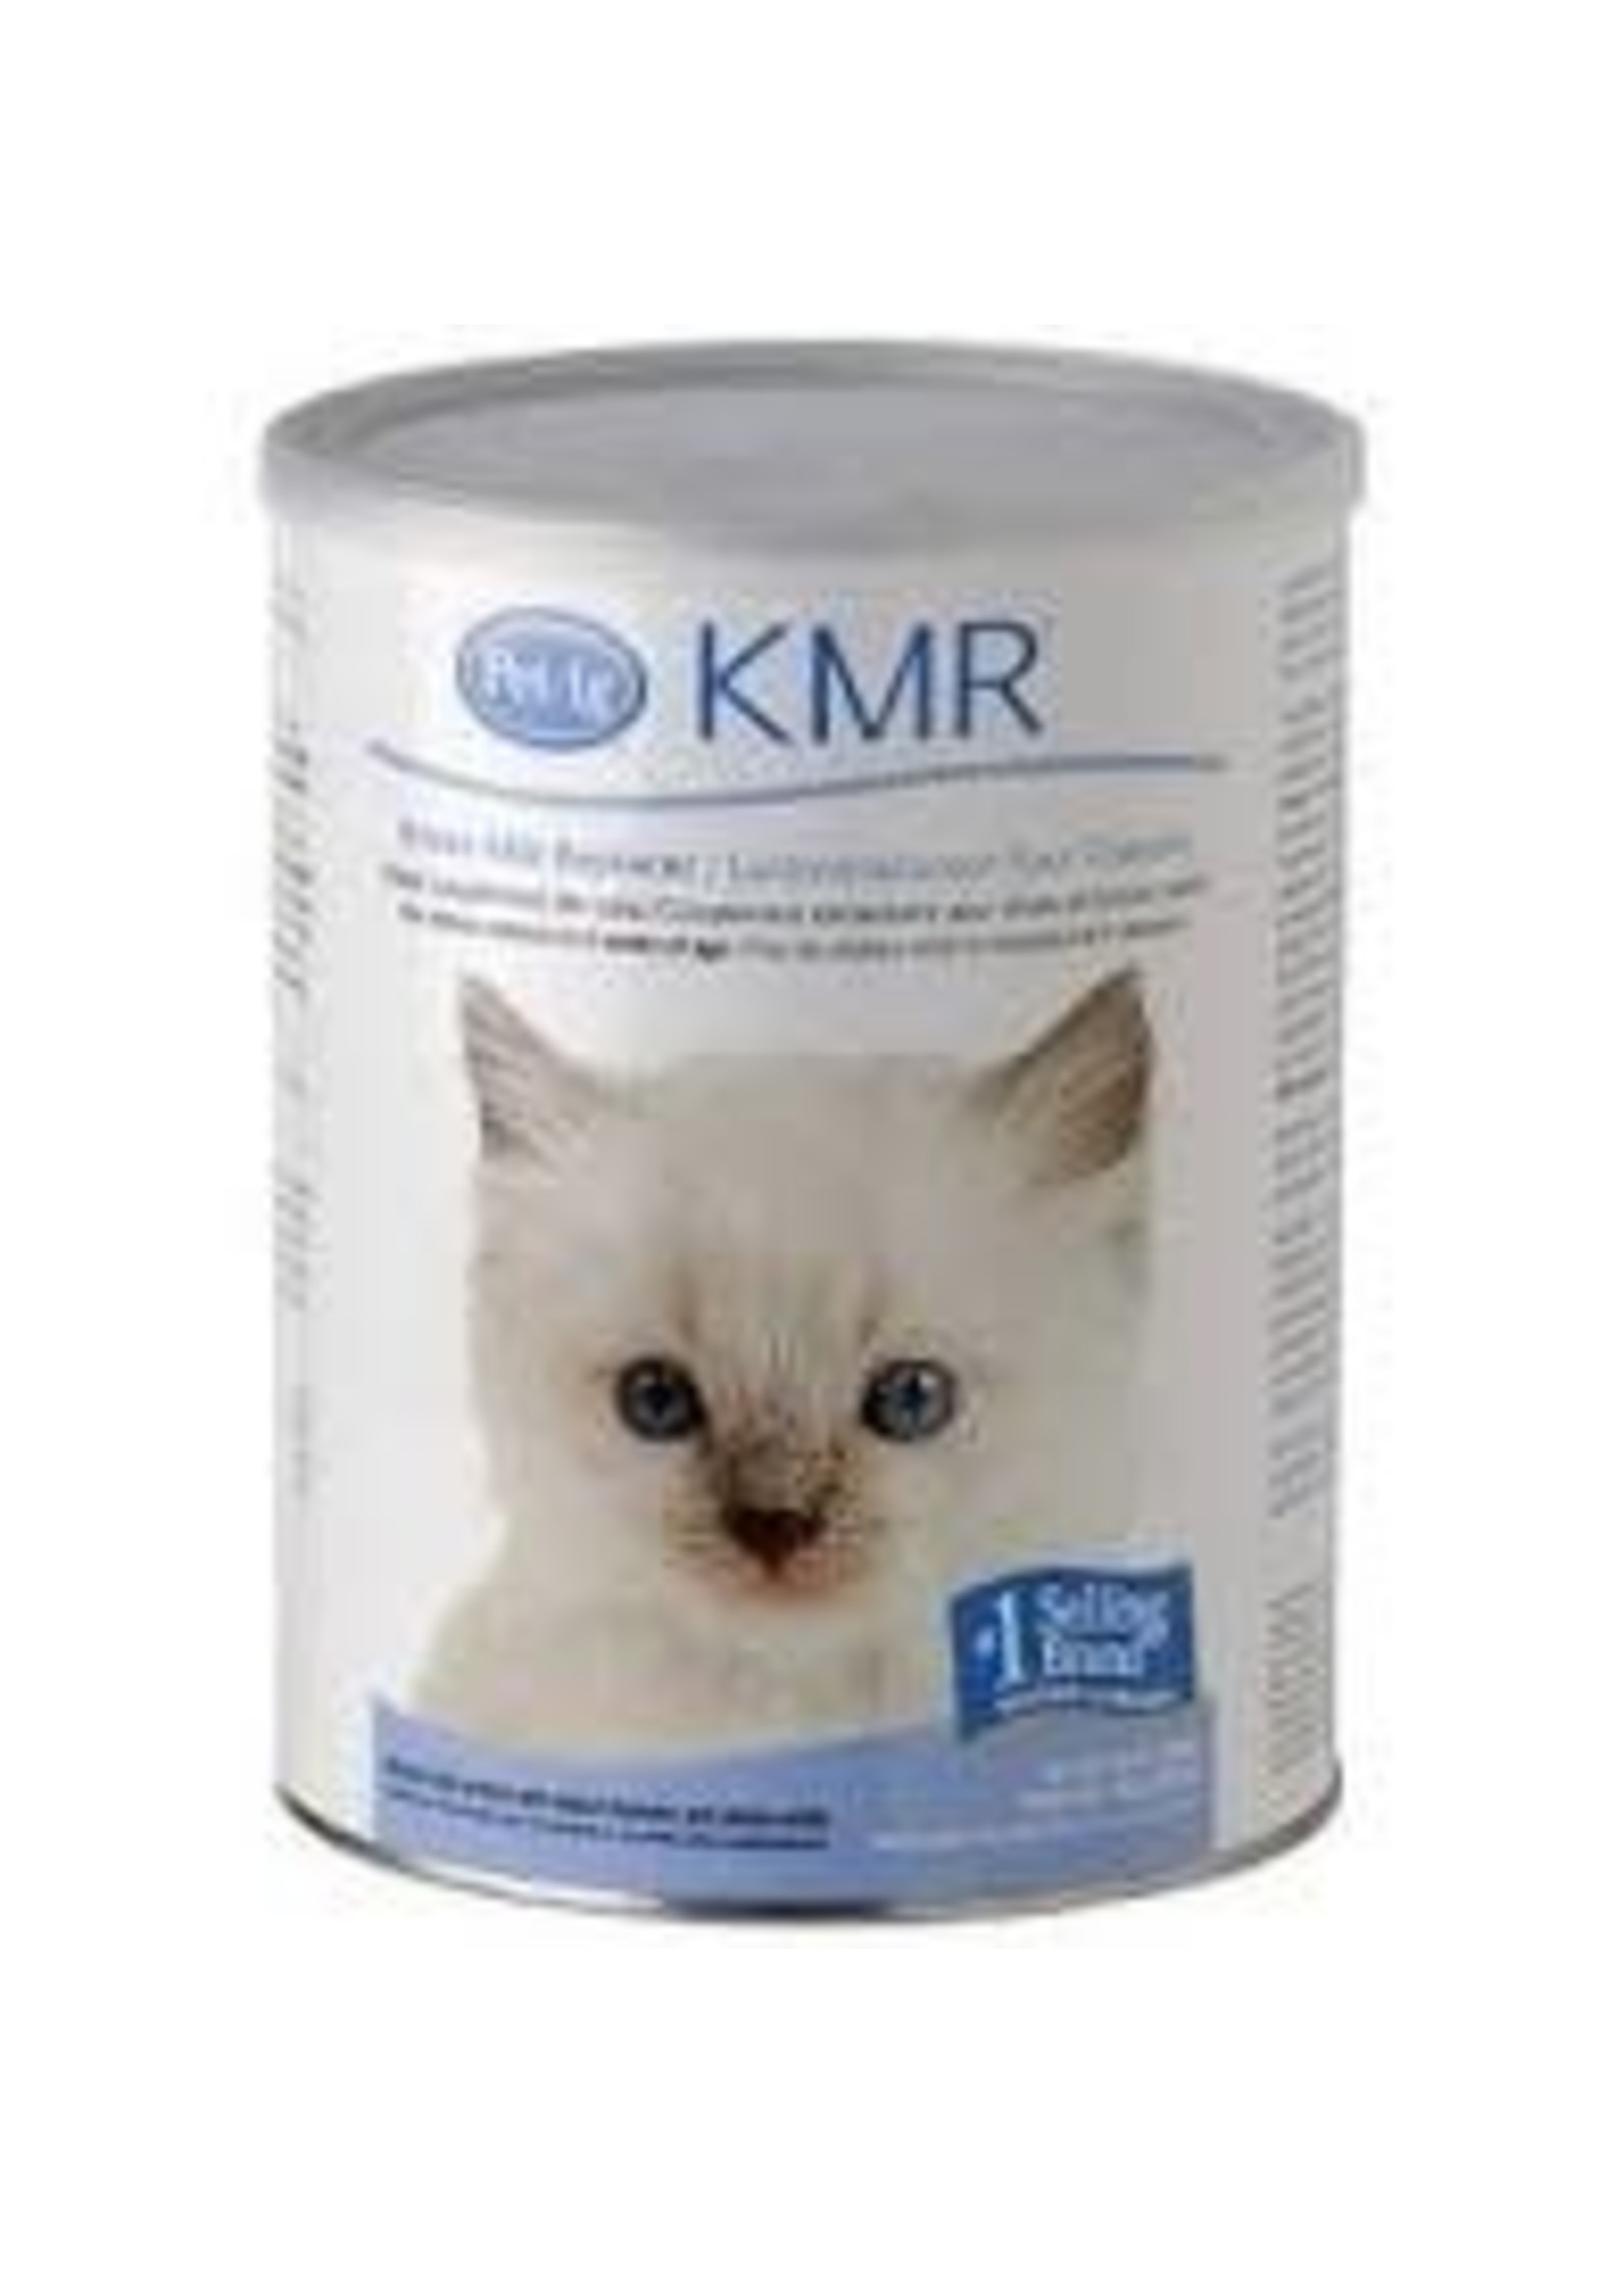 Pet-Ag Pet-Ag - KMR Powder Milk Replacer Kitten